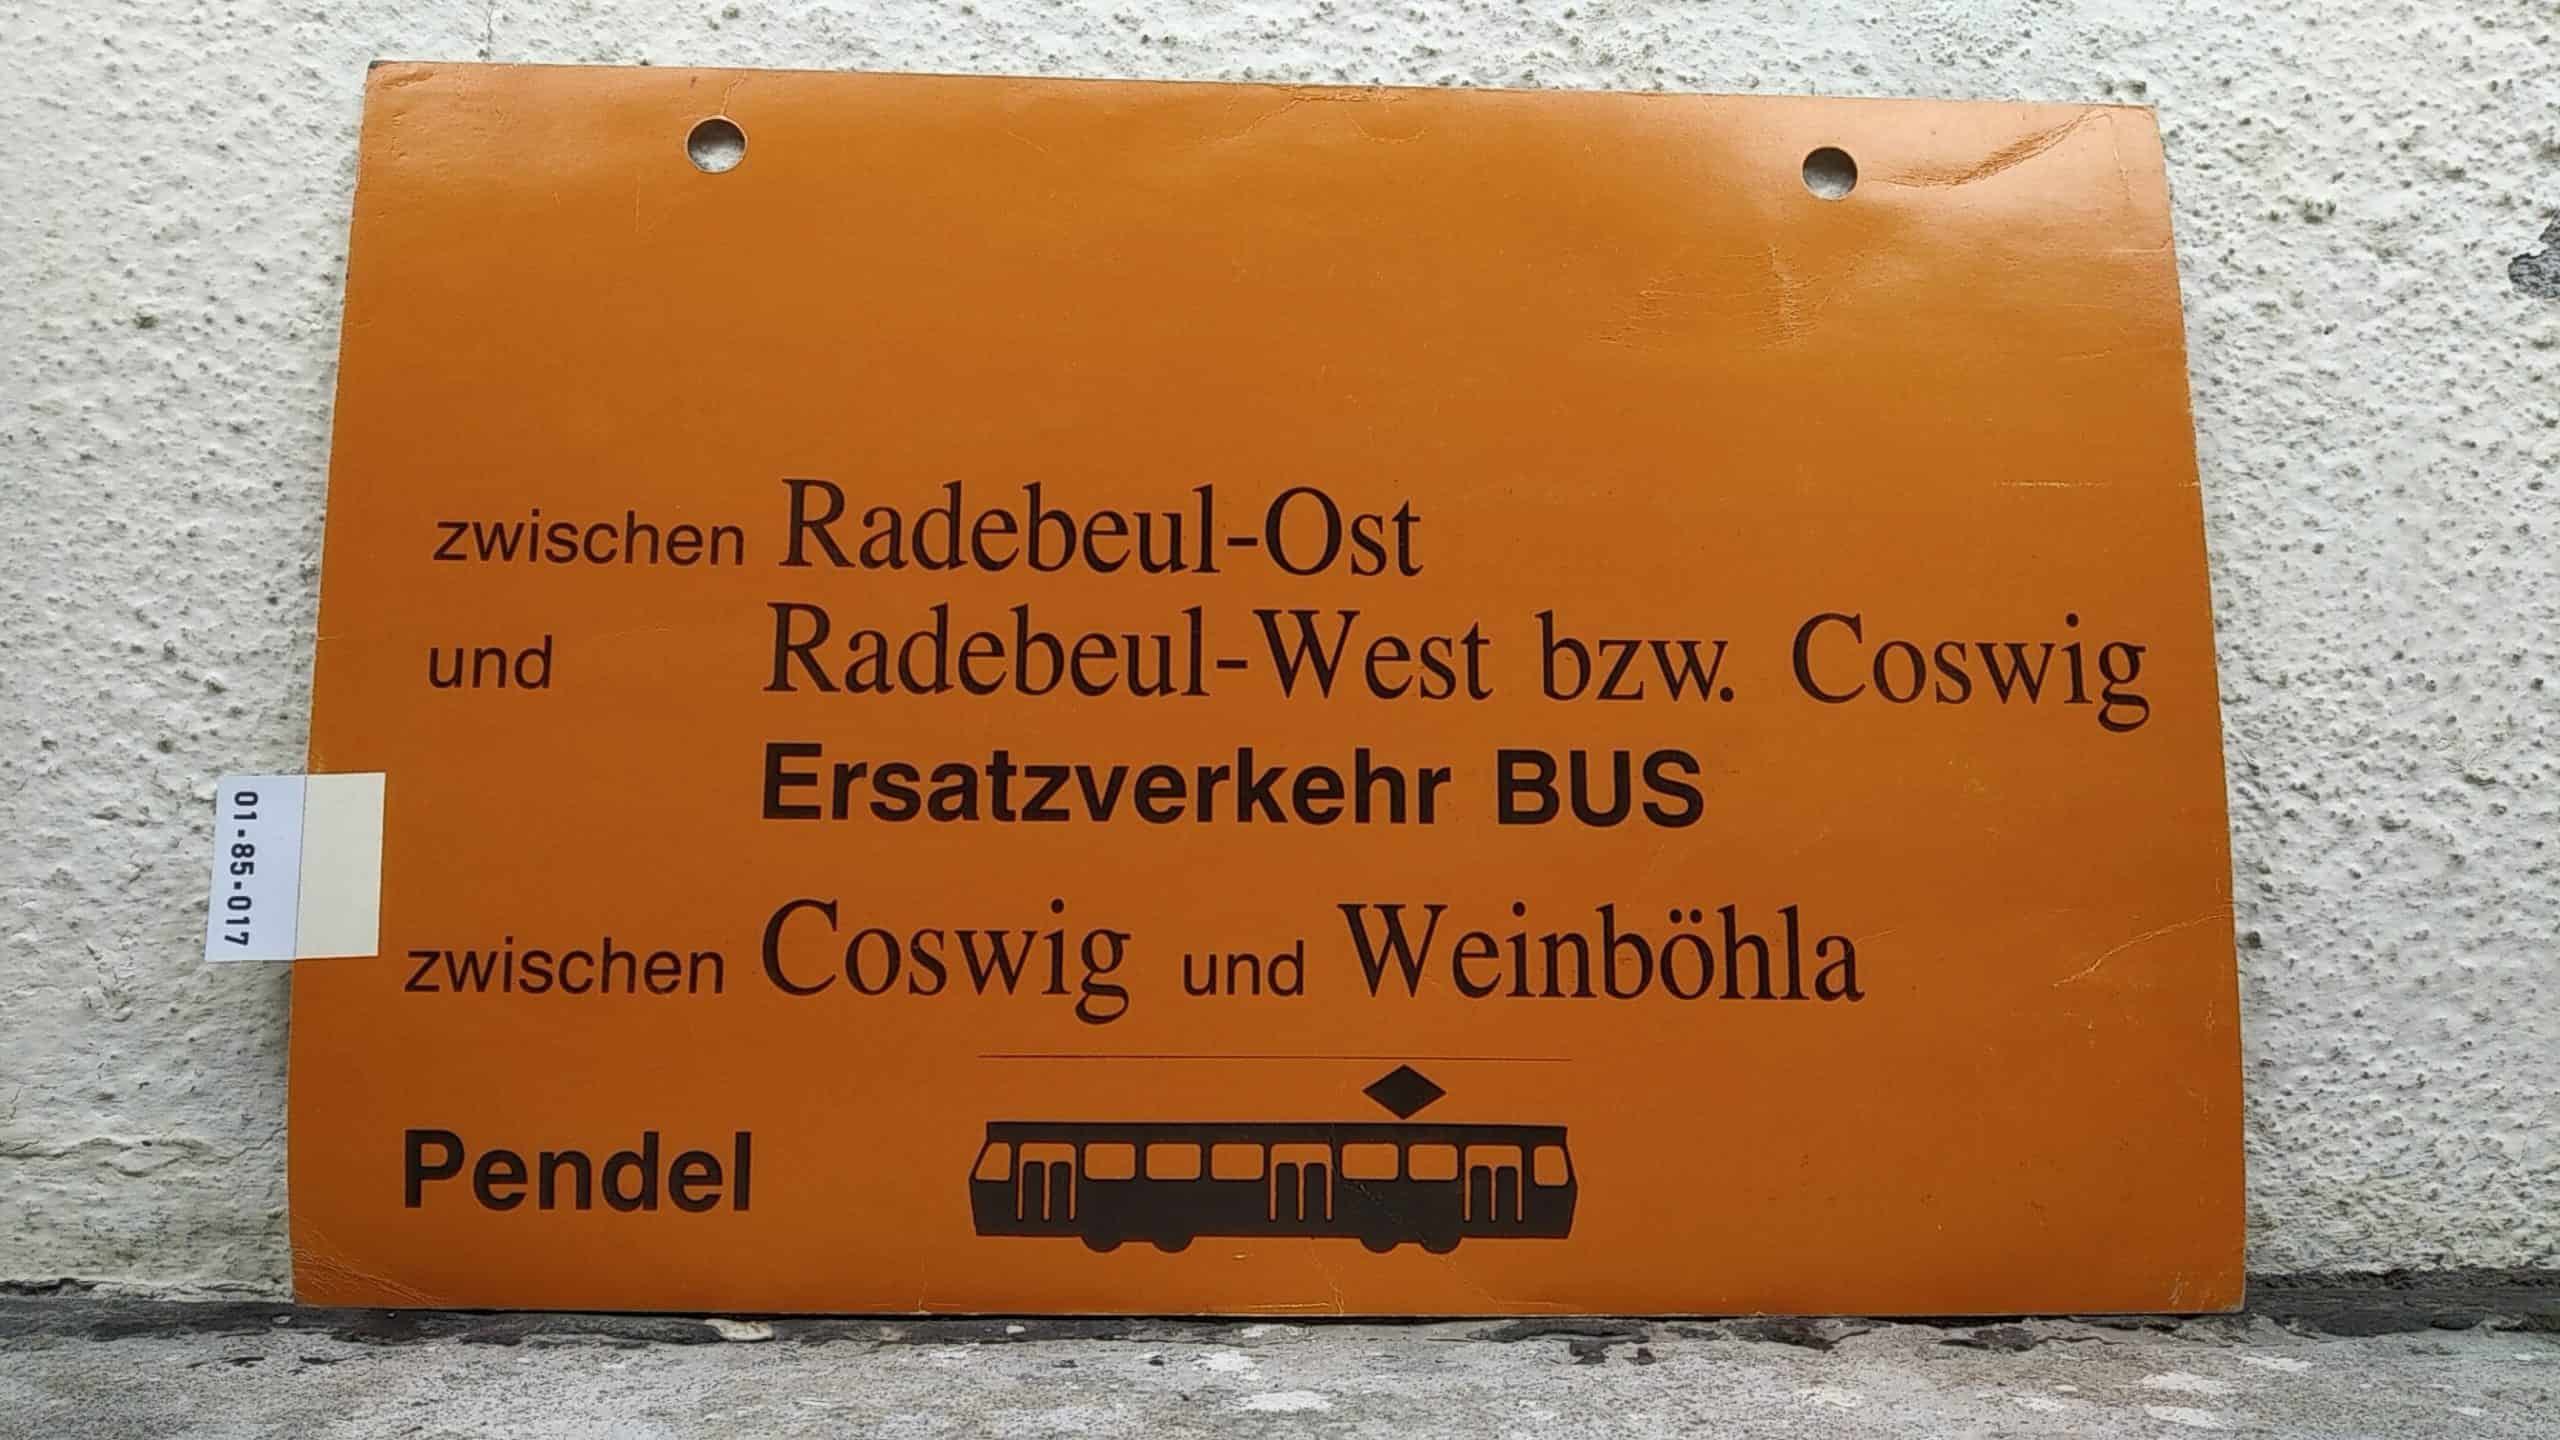 Ein seltenes Straßenbahn-Umleitungsschild aus Dresden: zwischen Radebeul-Ost und Radebeul-West bzw. Coswig Ersatzverkehr BUS zwischen Coswig und Weinböhla Pendel [Tram neu]